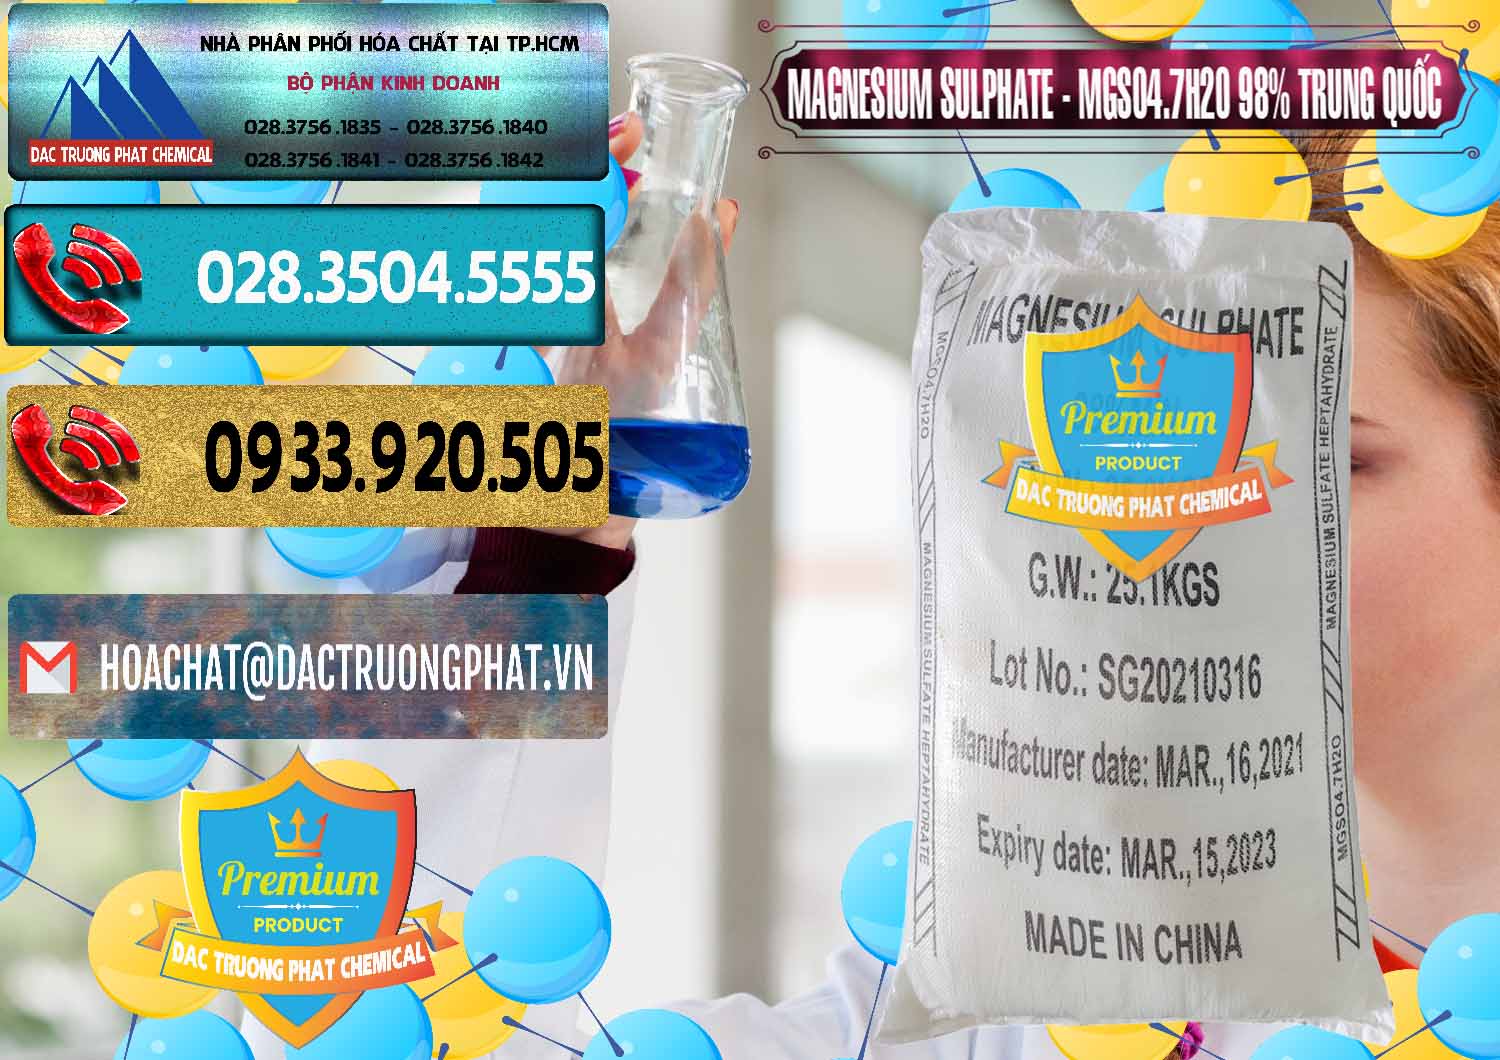 Nhà cung ứng và bán MGSO4.7H2O – Magnesium Sulphate 98% Trung Quốc China - 0229 - Đơn vị chuyên phân phối và nhập khẩu hóa chất tại TP.HCM - hoachatdetnhuom.com